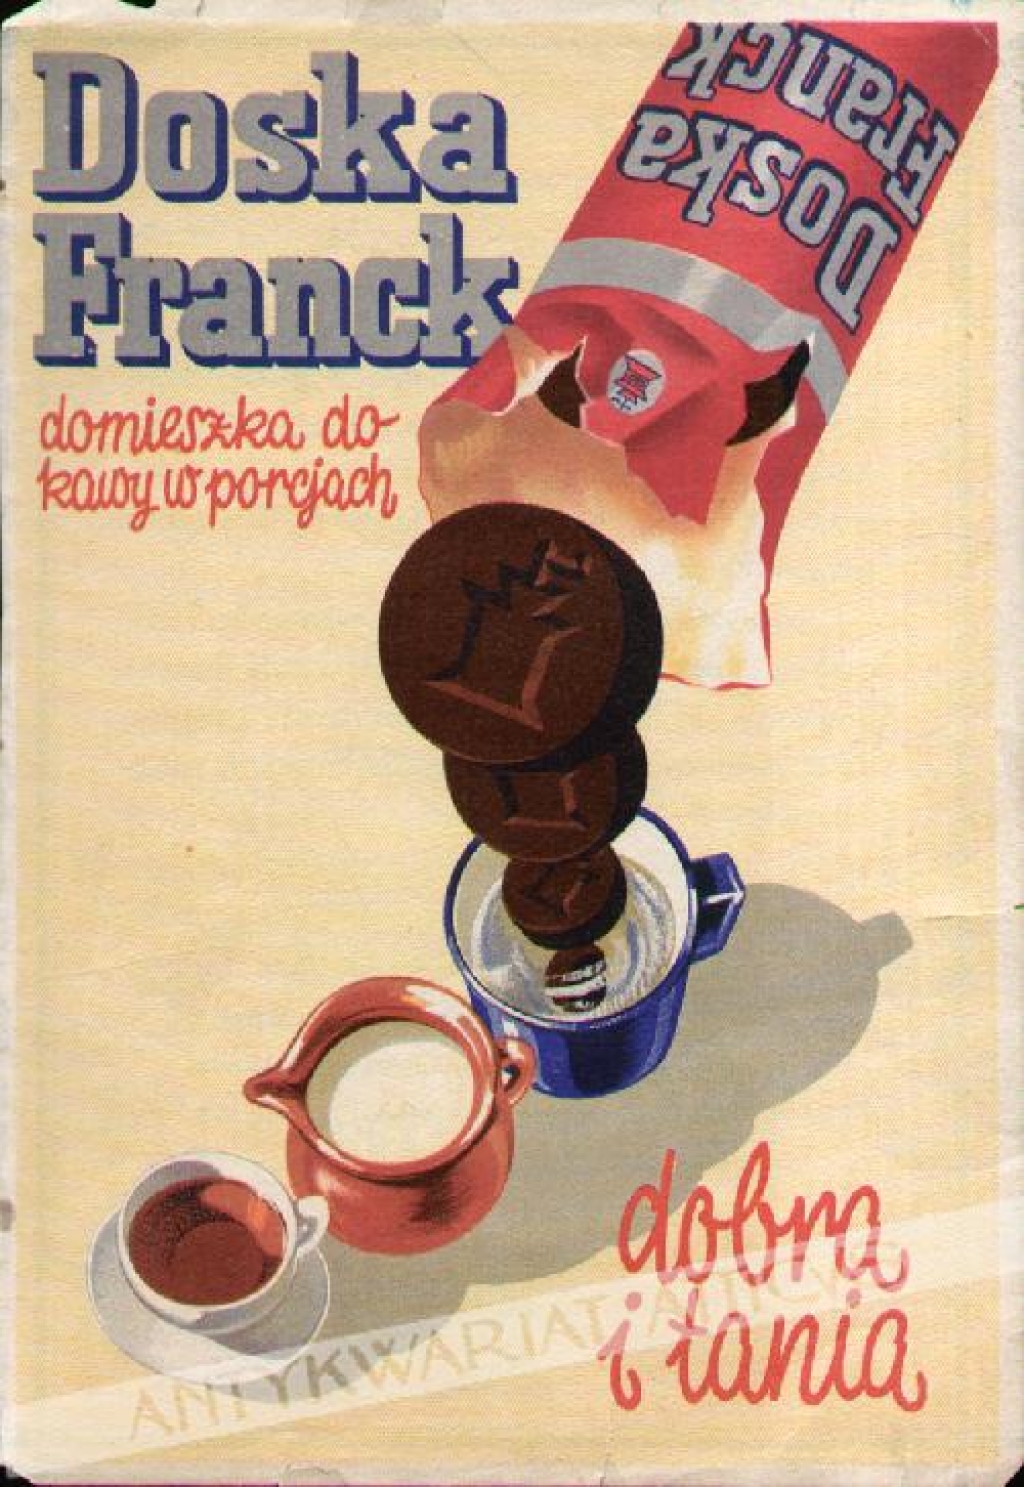 Doska Franck - domieszka do kawy porcjach. Dobra i tania [folder reklamowy]